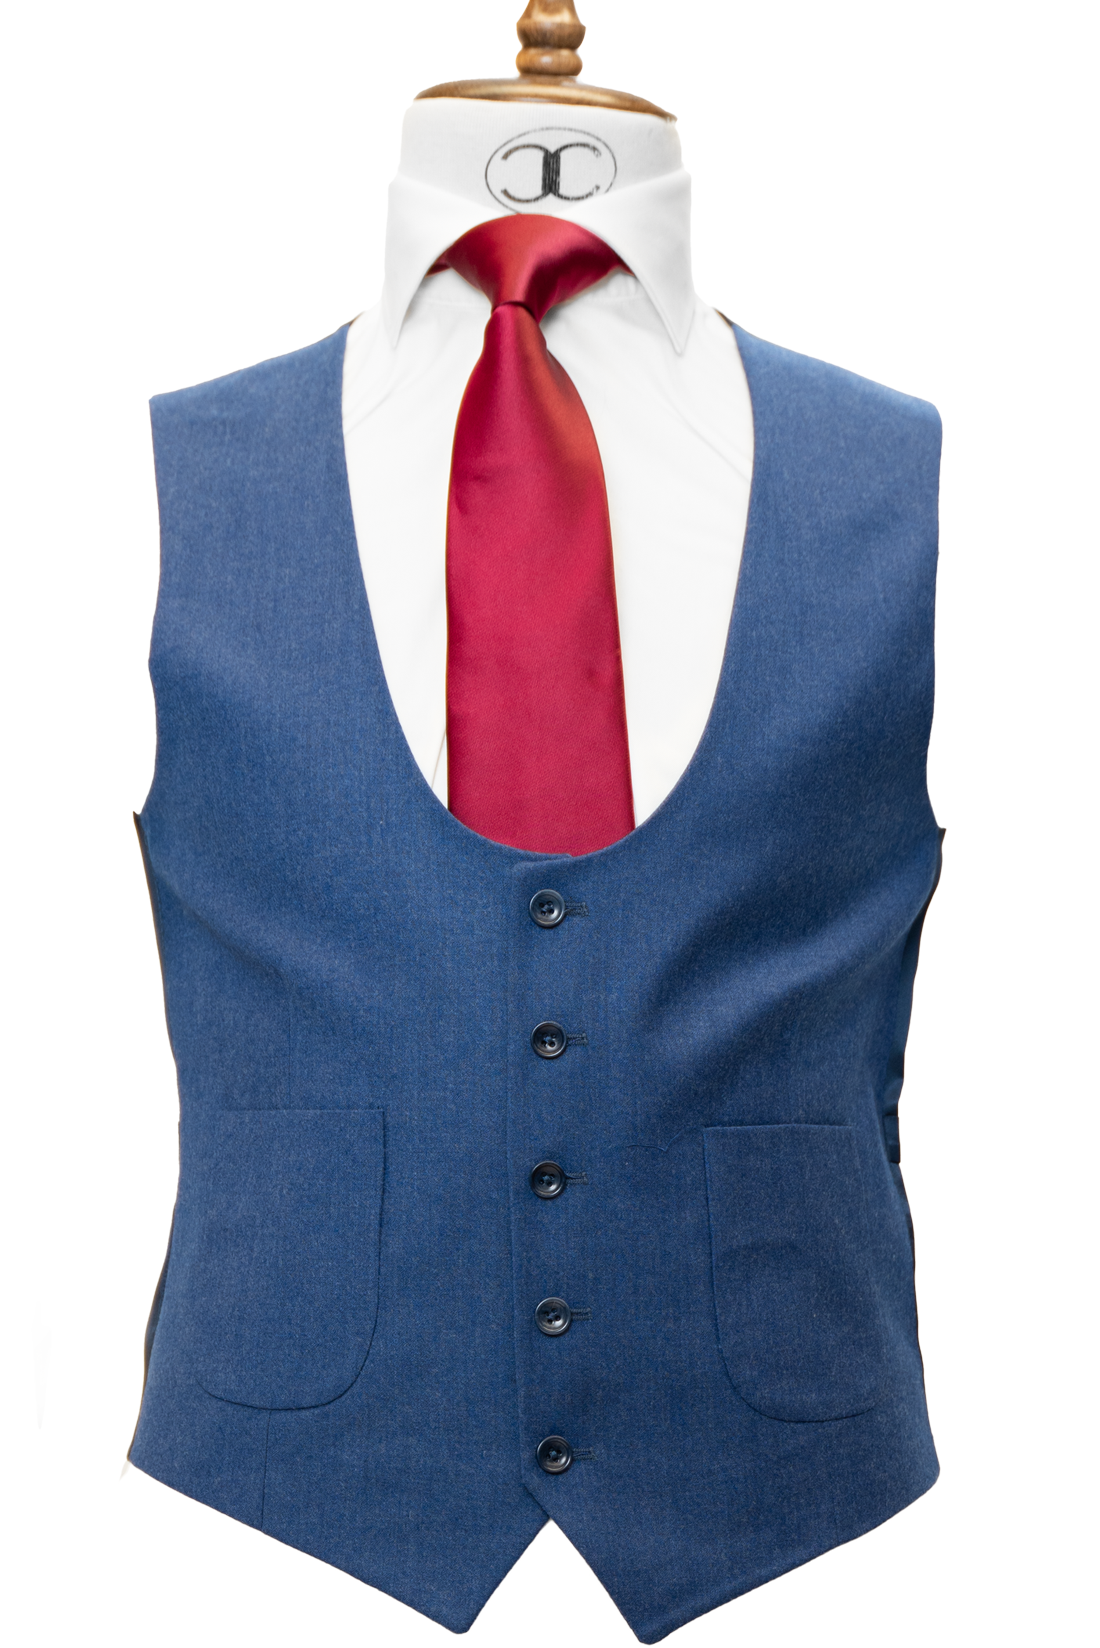 Zignone - Royal Blue Cashmere 3-Piece Fit Slim Fit Suit with Patch Pockets